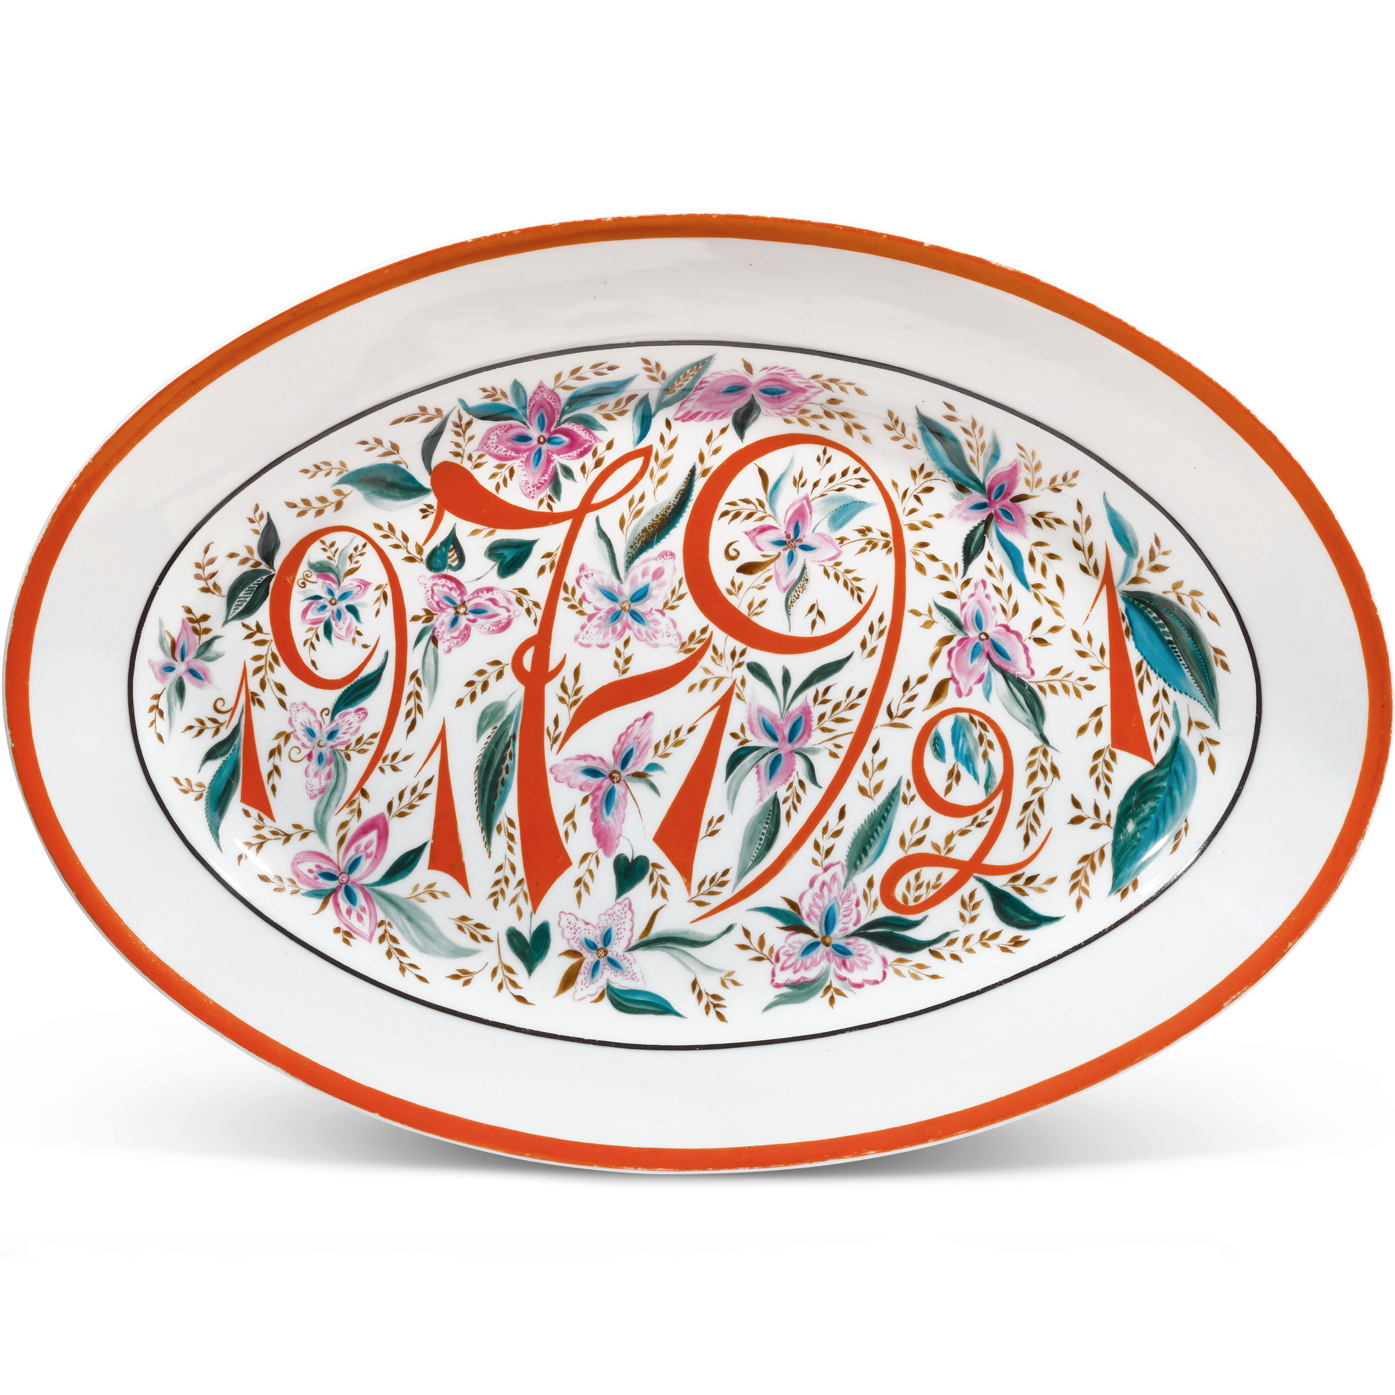 Soviet porcelain platter 1917-1921 by Bazilika Radonich